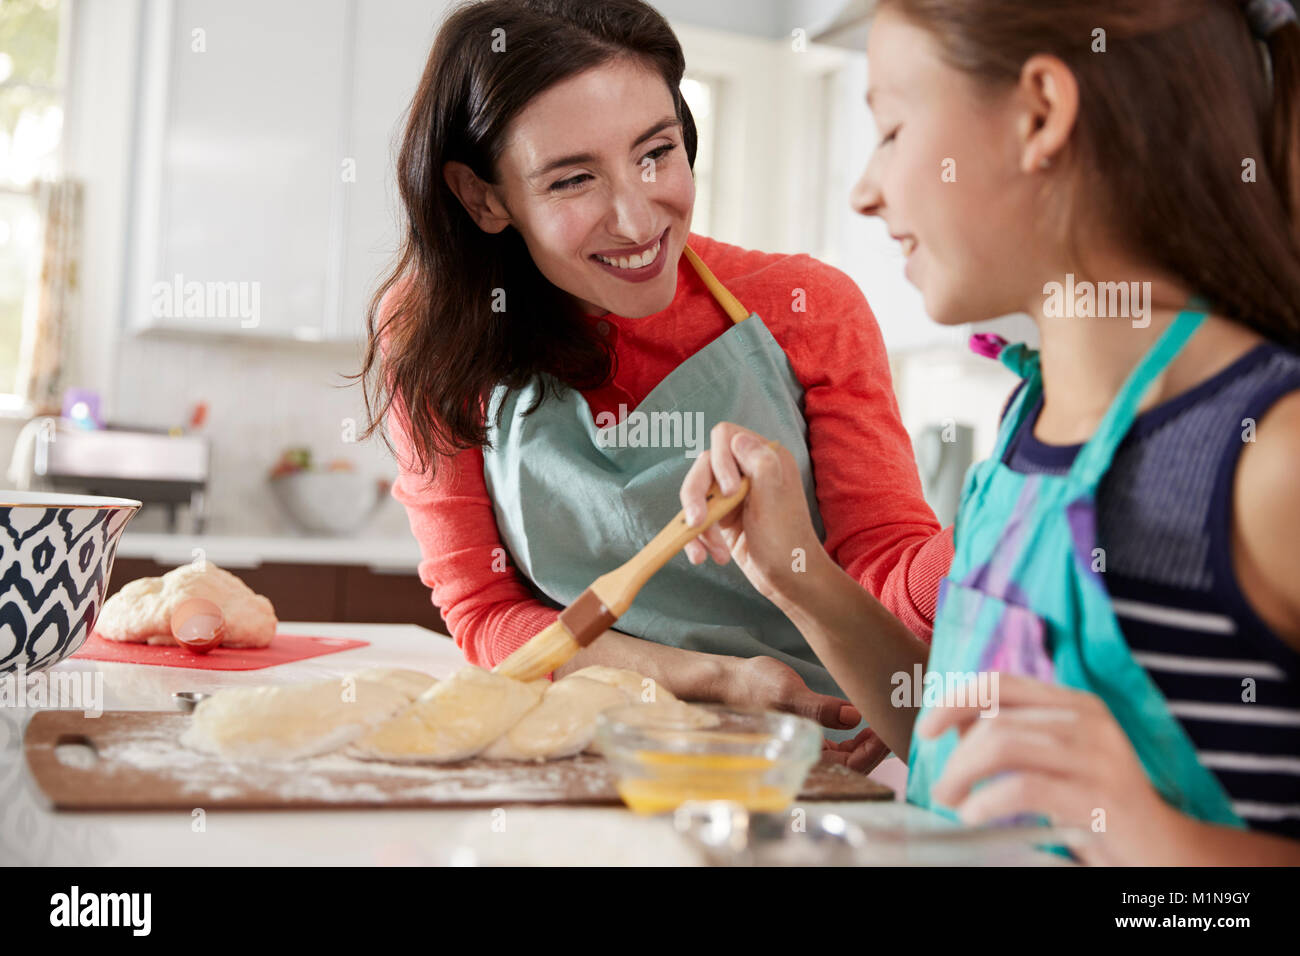 Girl brushing glaze sur pâte à pain challah avec sa maman Banque D'Images